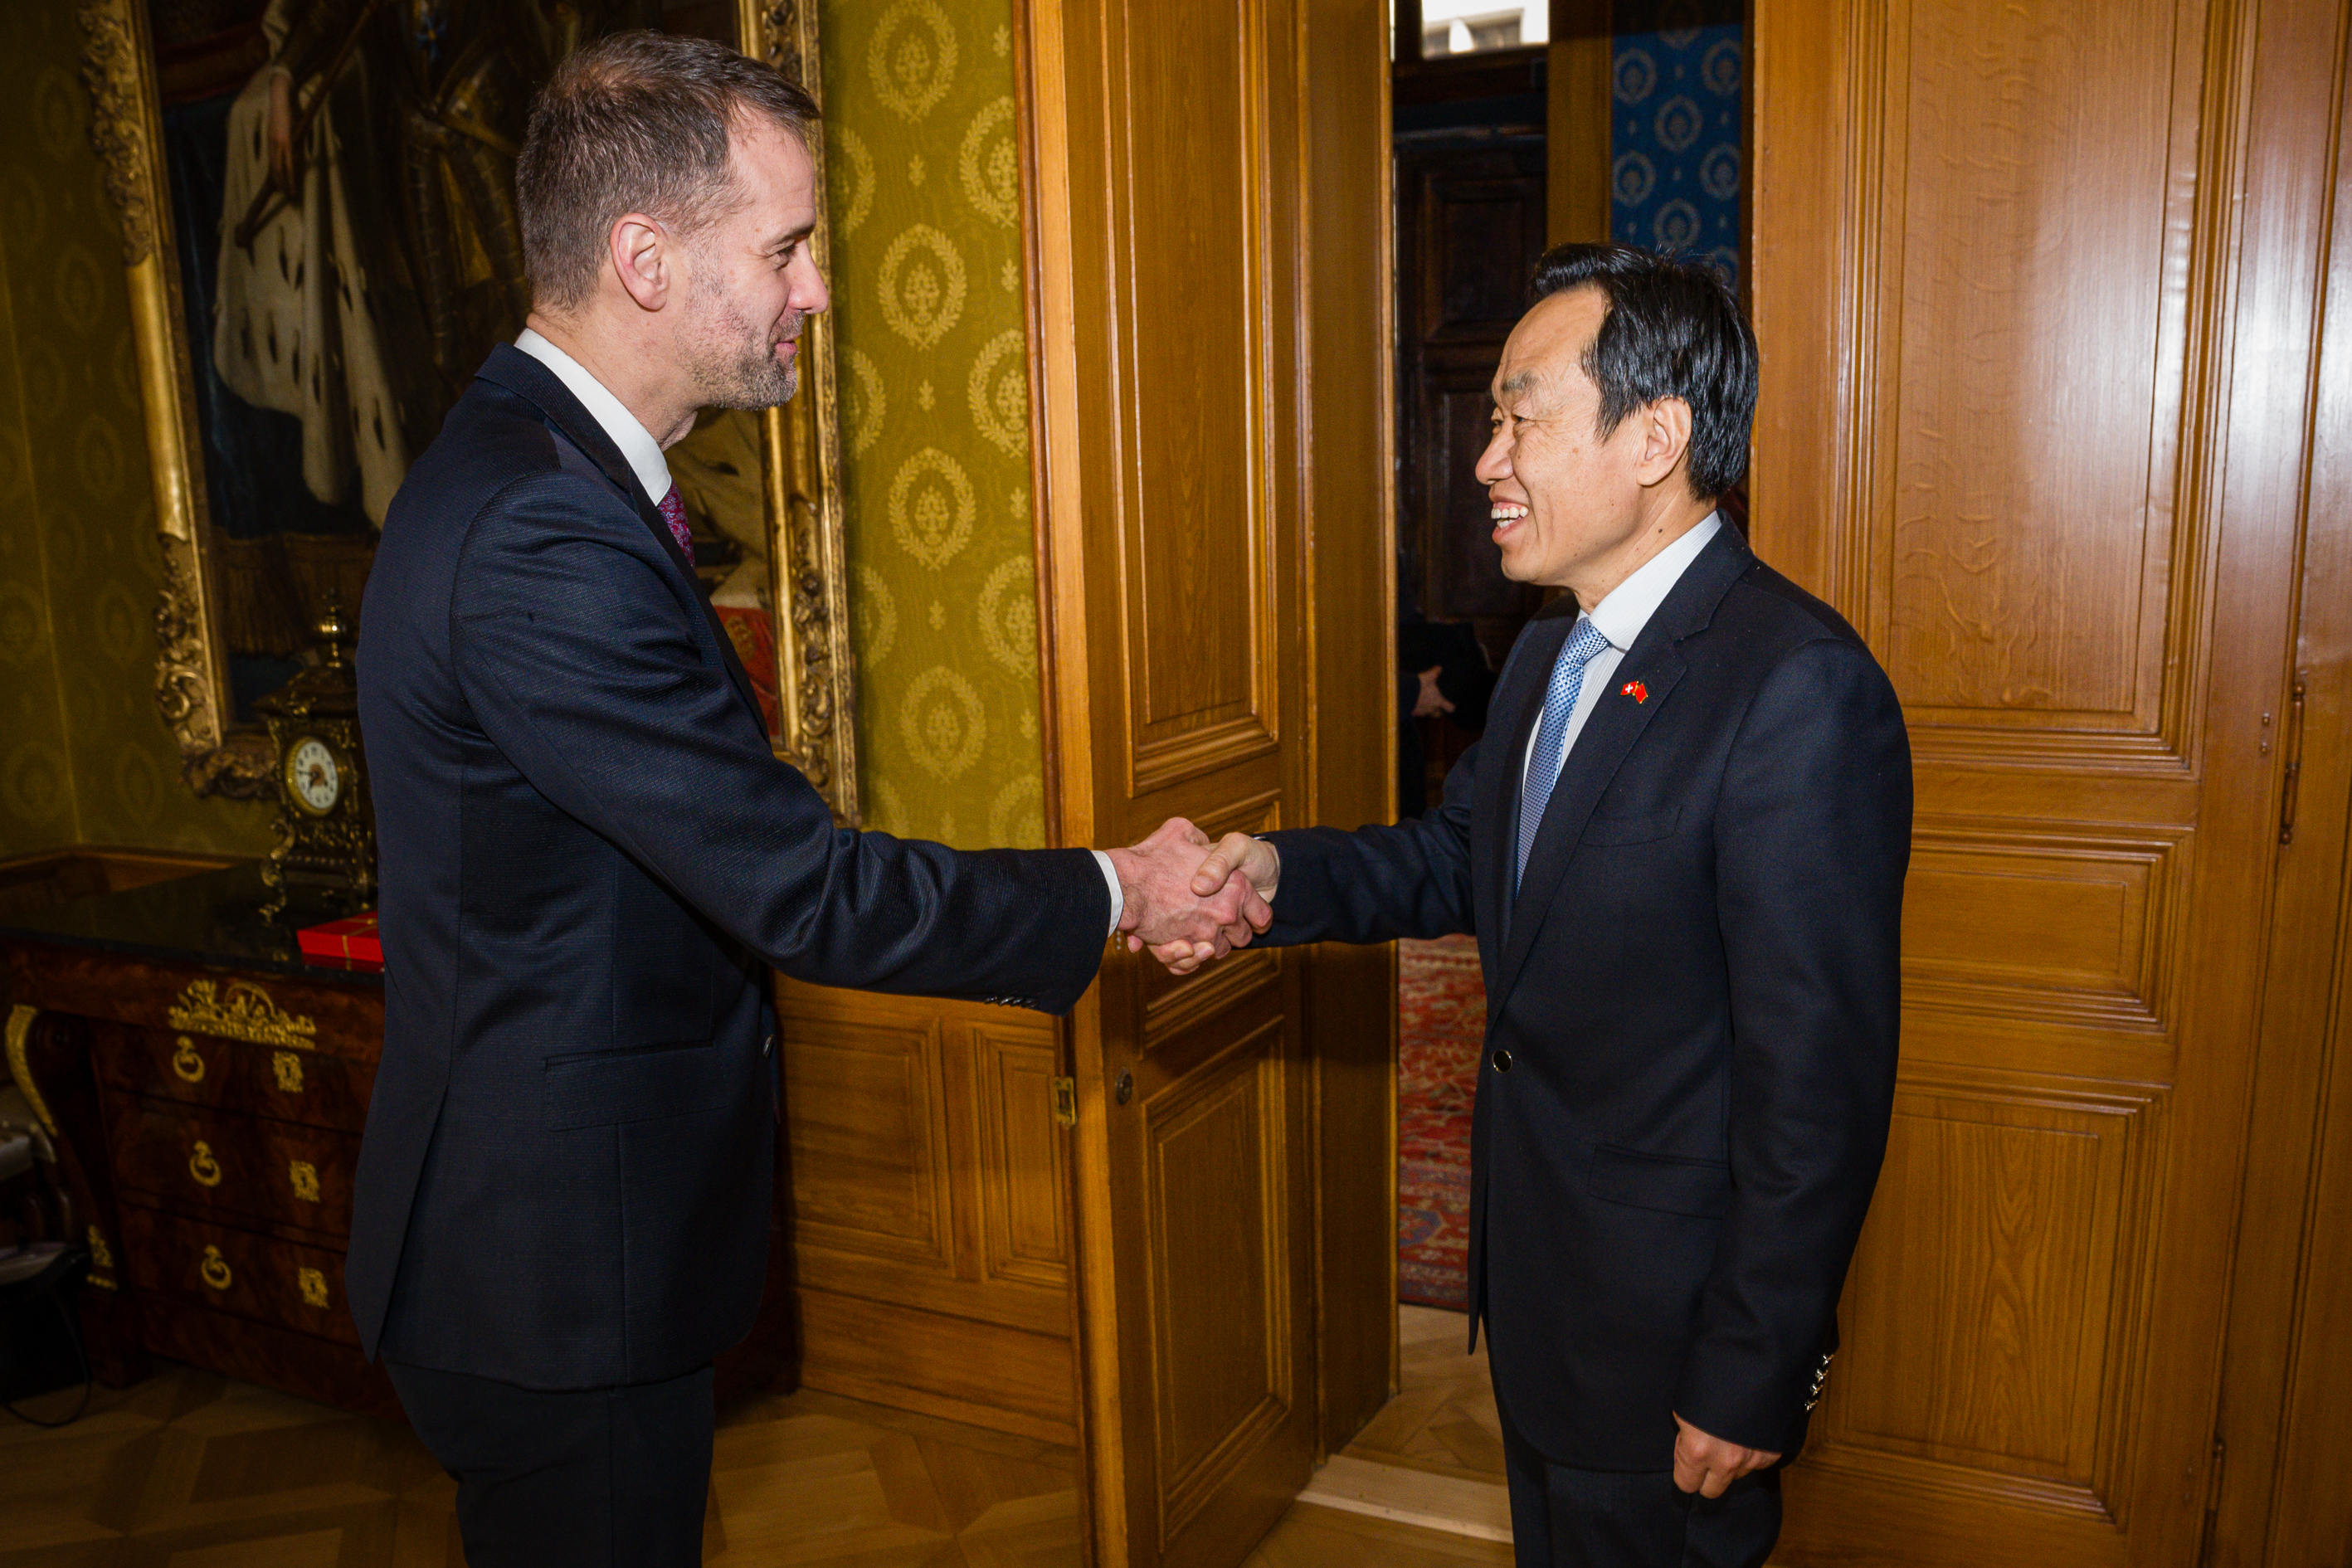 Arrivée de l'Ambassadeur de Chine en Suisse et rencontre avec Monsieur Hodgers